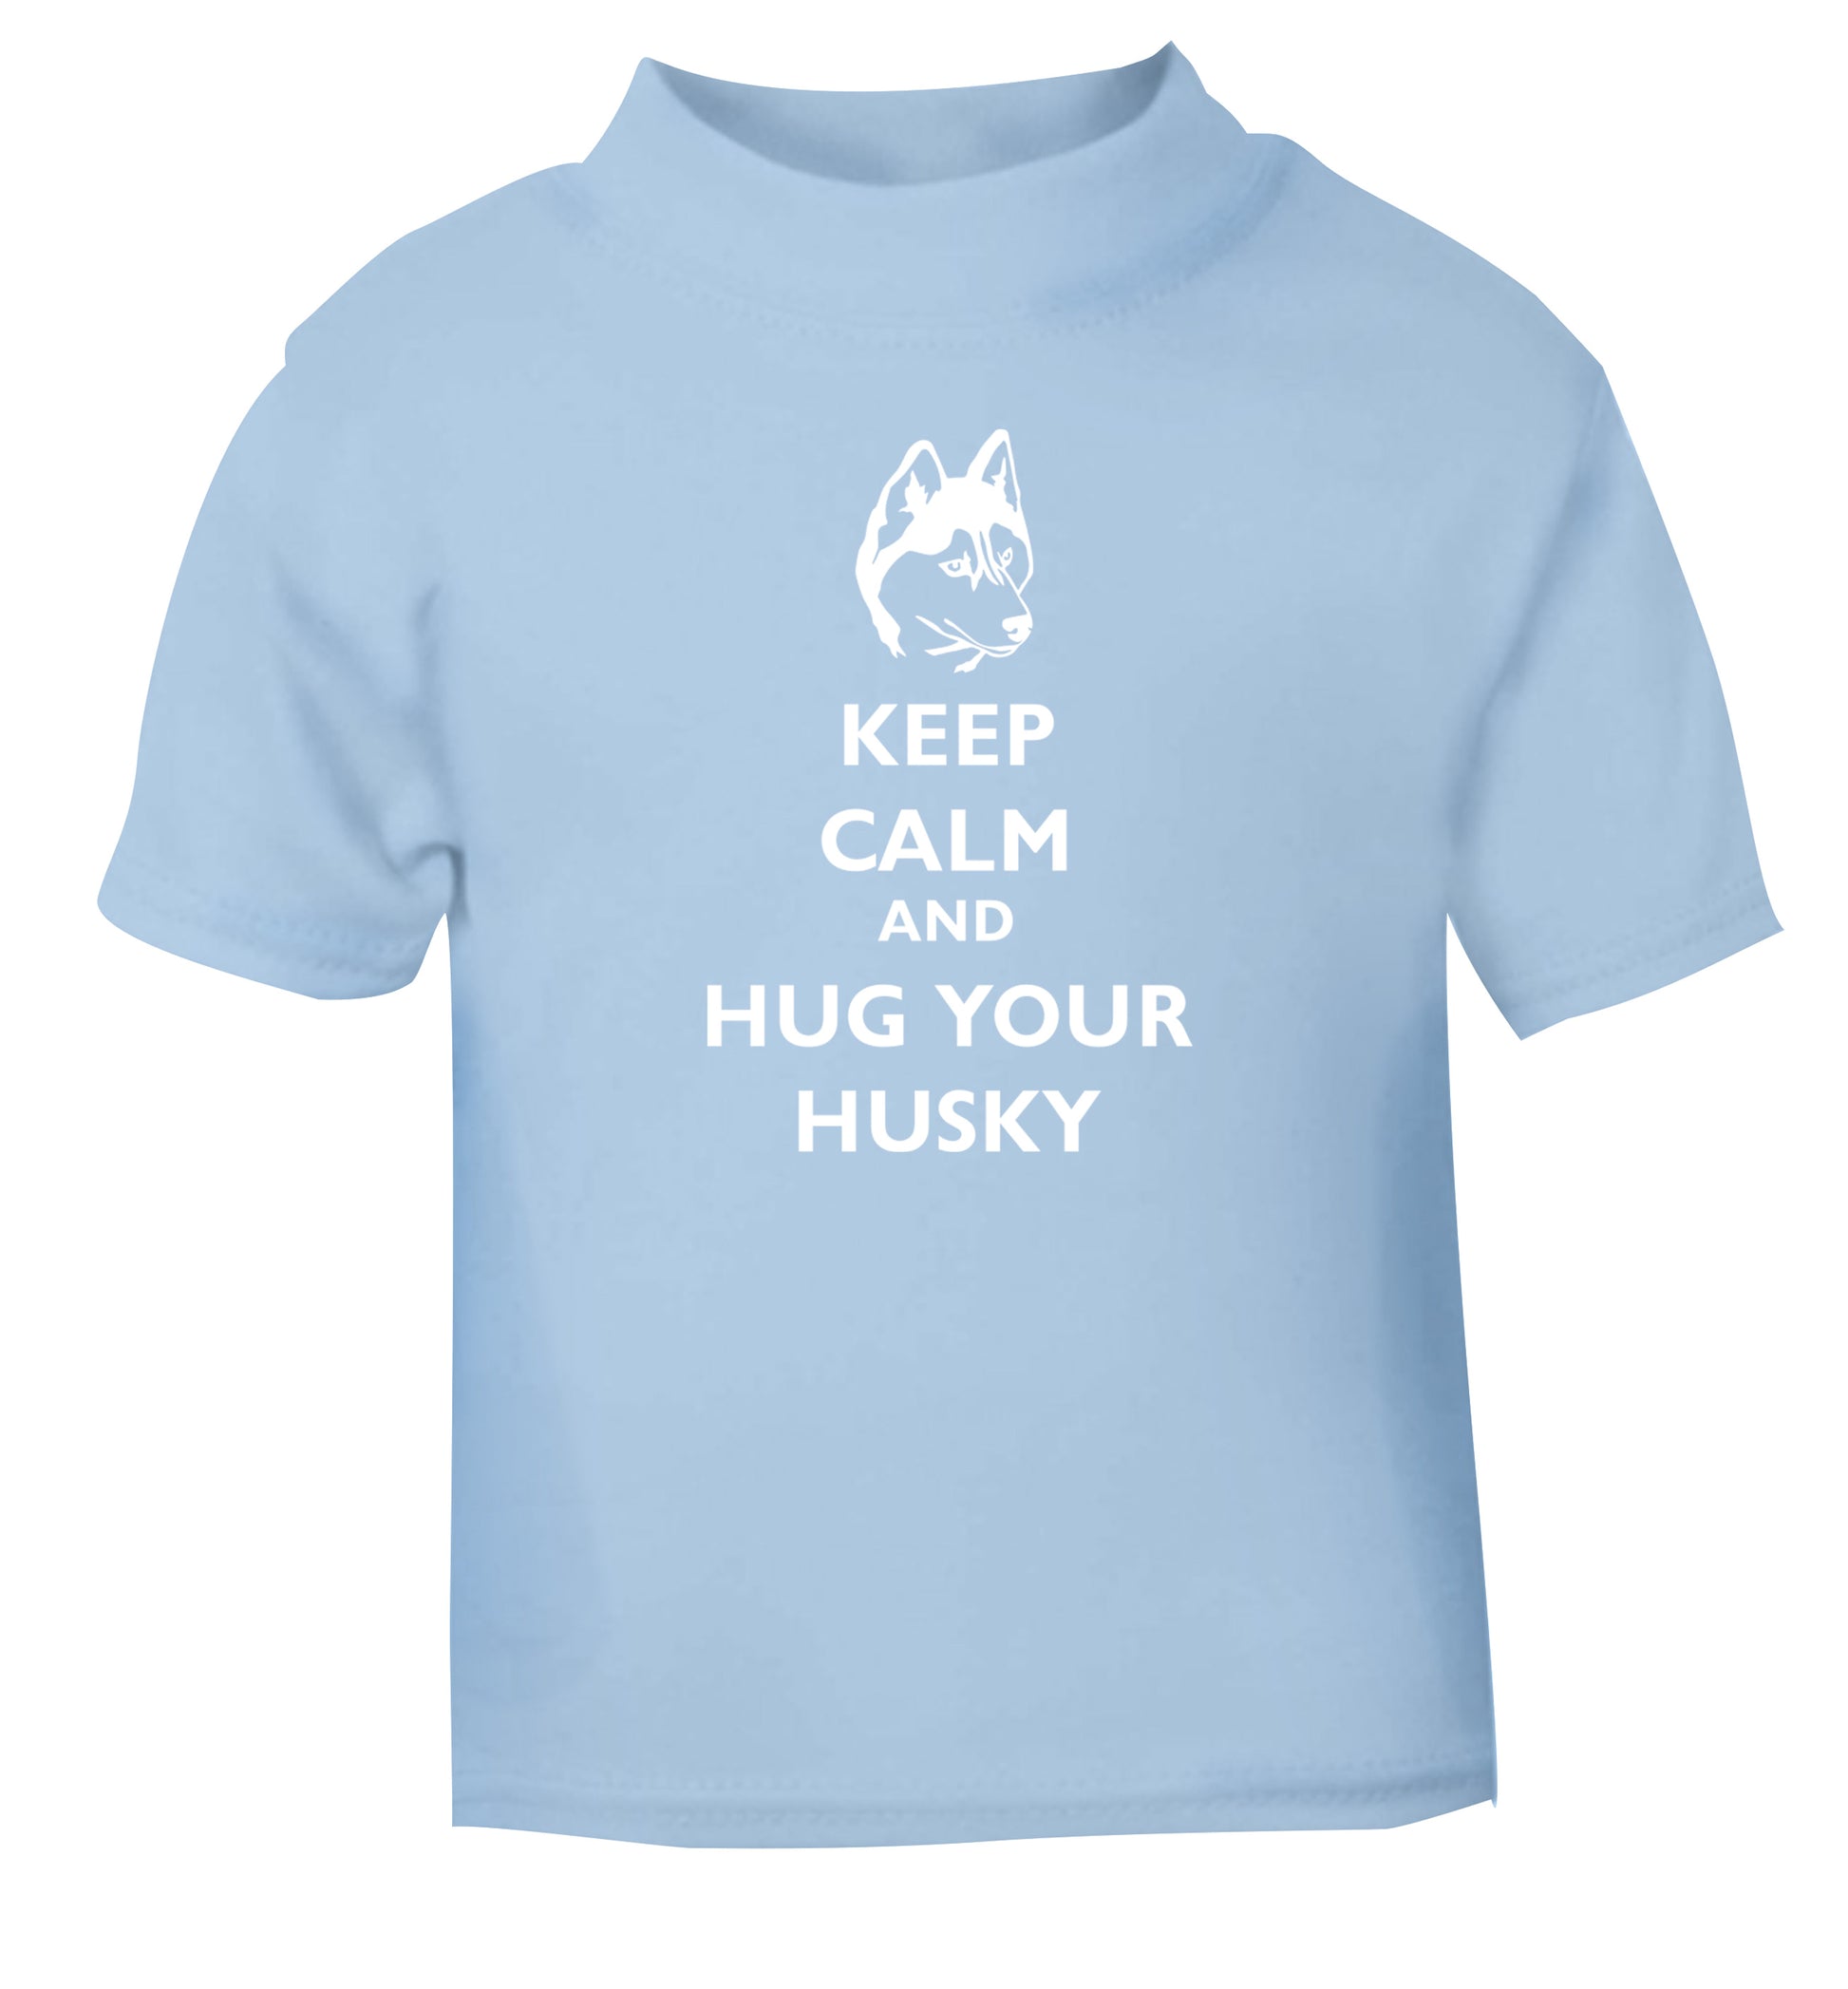 Keep calm and hug your husky light blue Baby Toddler Tshirt 2 Years